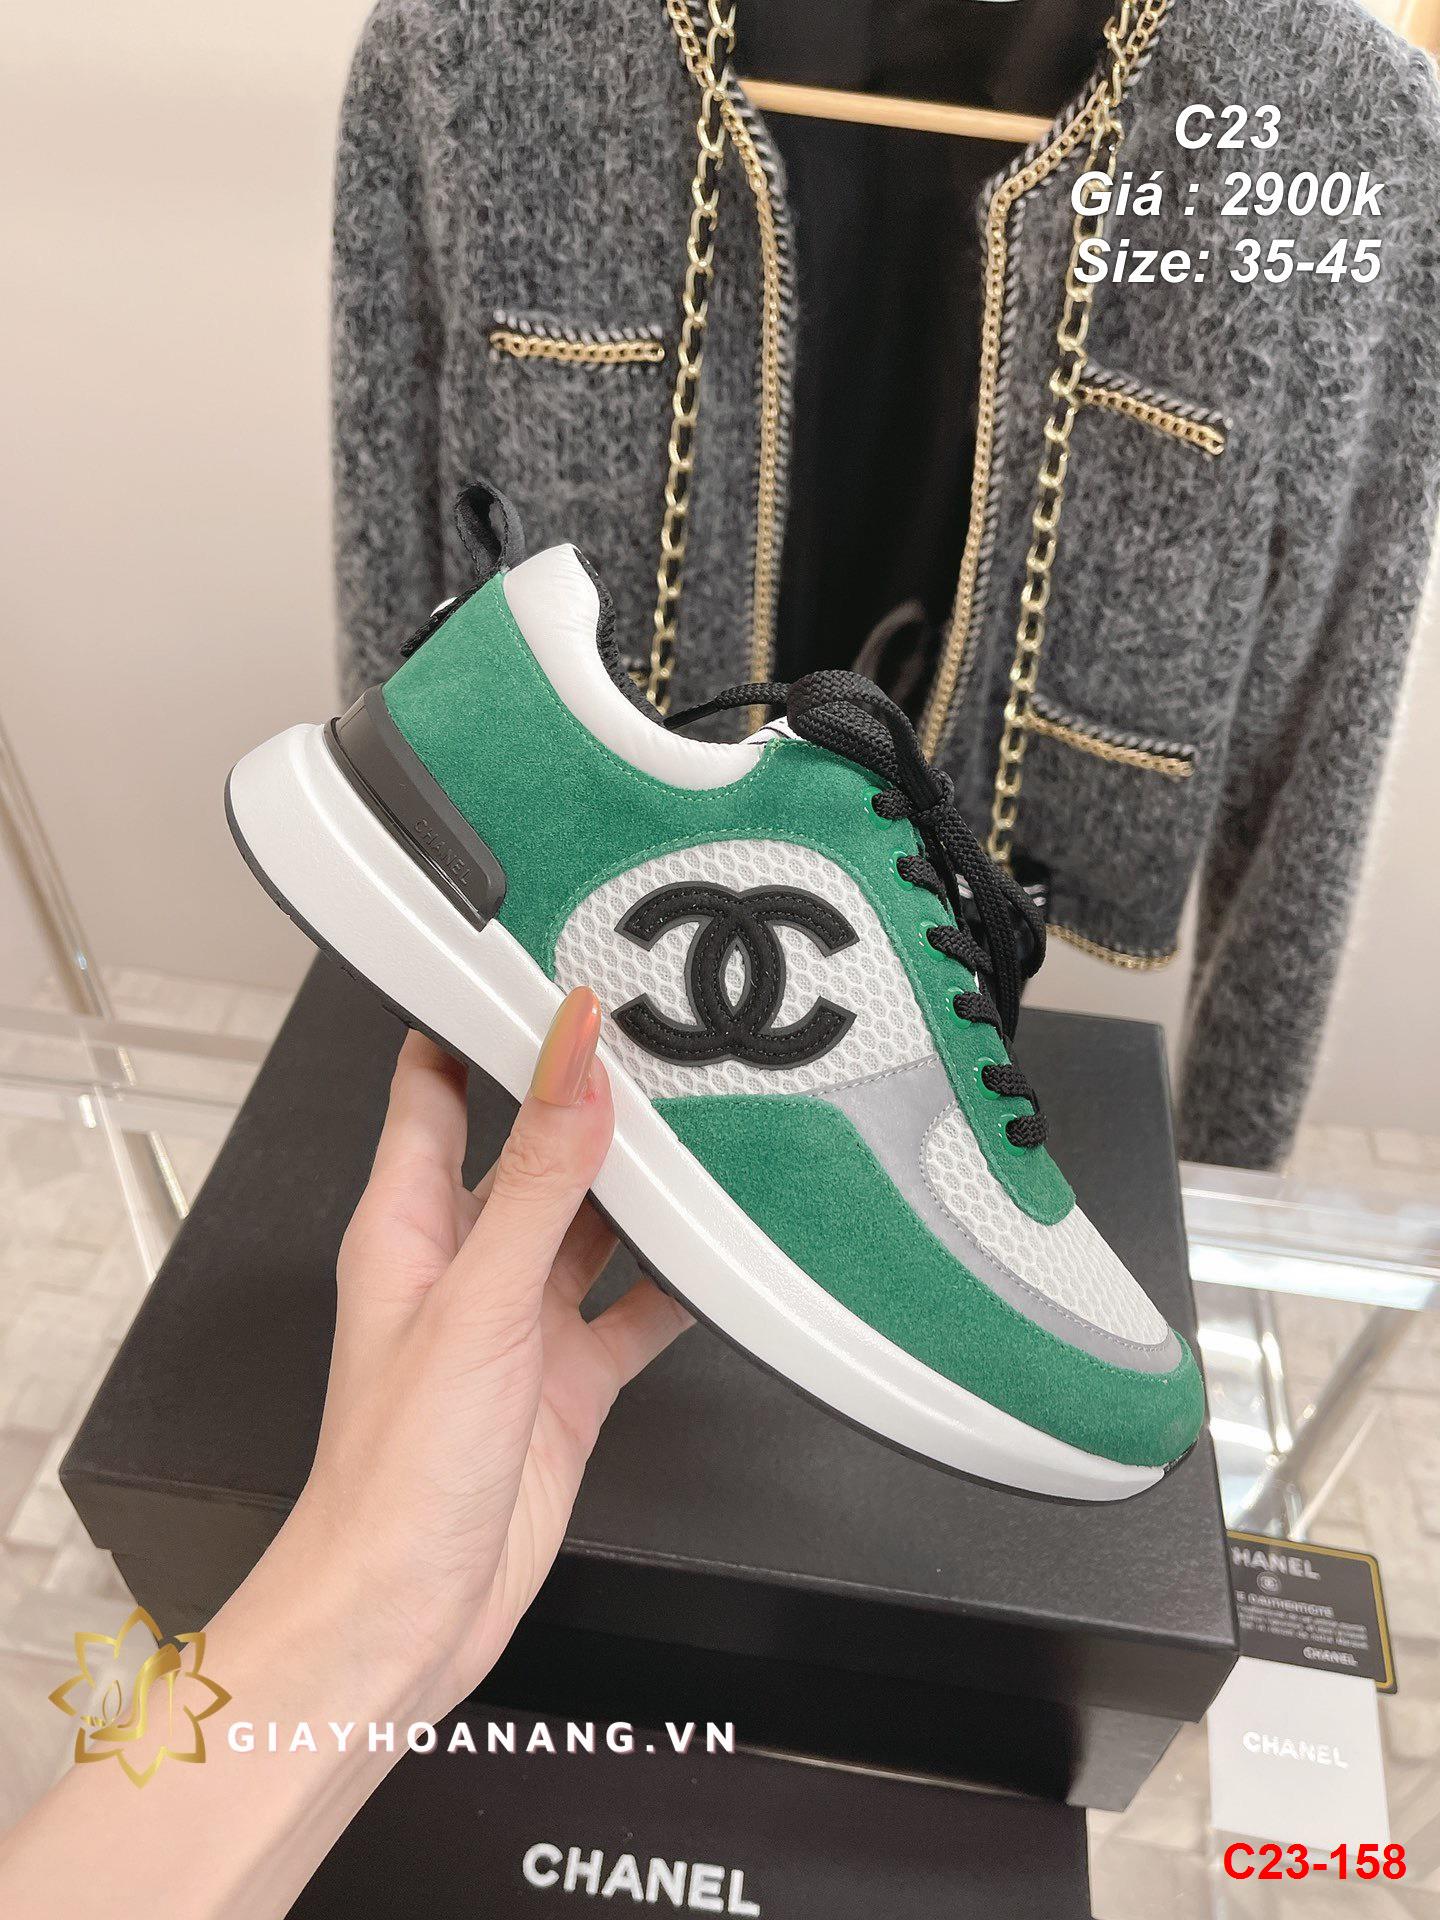 C23-158 Chanel giày thể thao siêu cấp